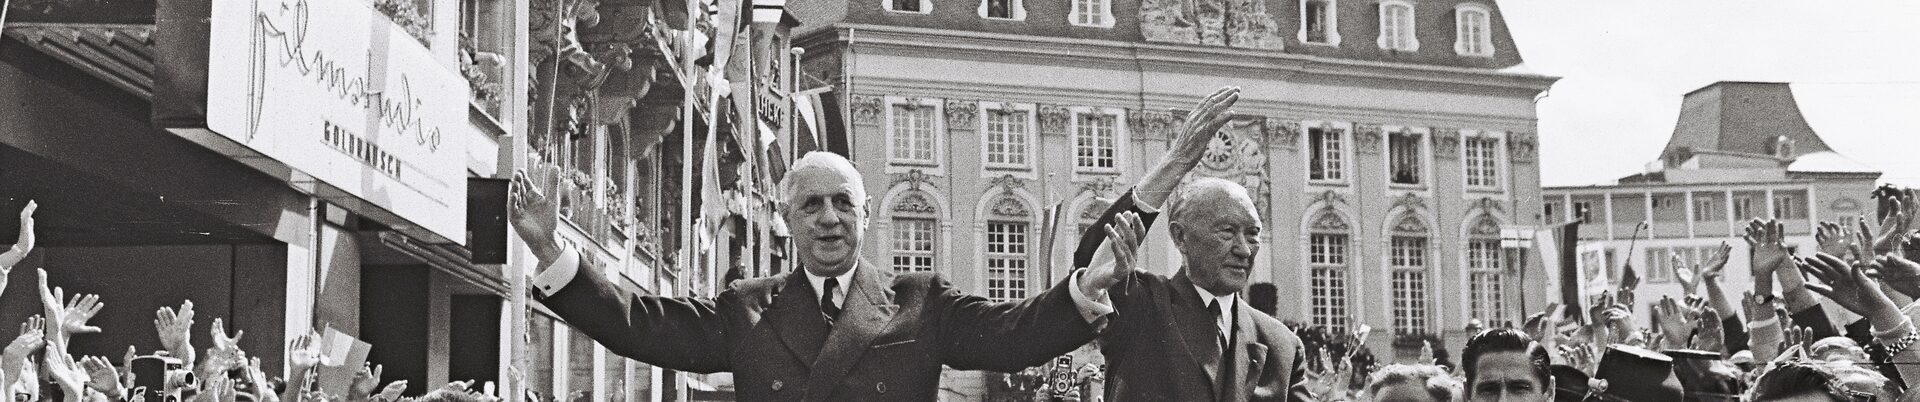 Der französische Präsident Charles de Gaulle und Bundeskanzler Konrad Adenauer fahren 1962 in einem offenen Auto über den Bonner Markt und winken